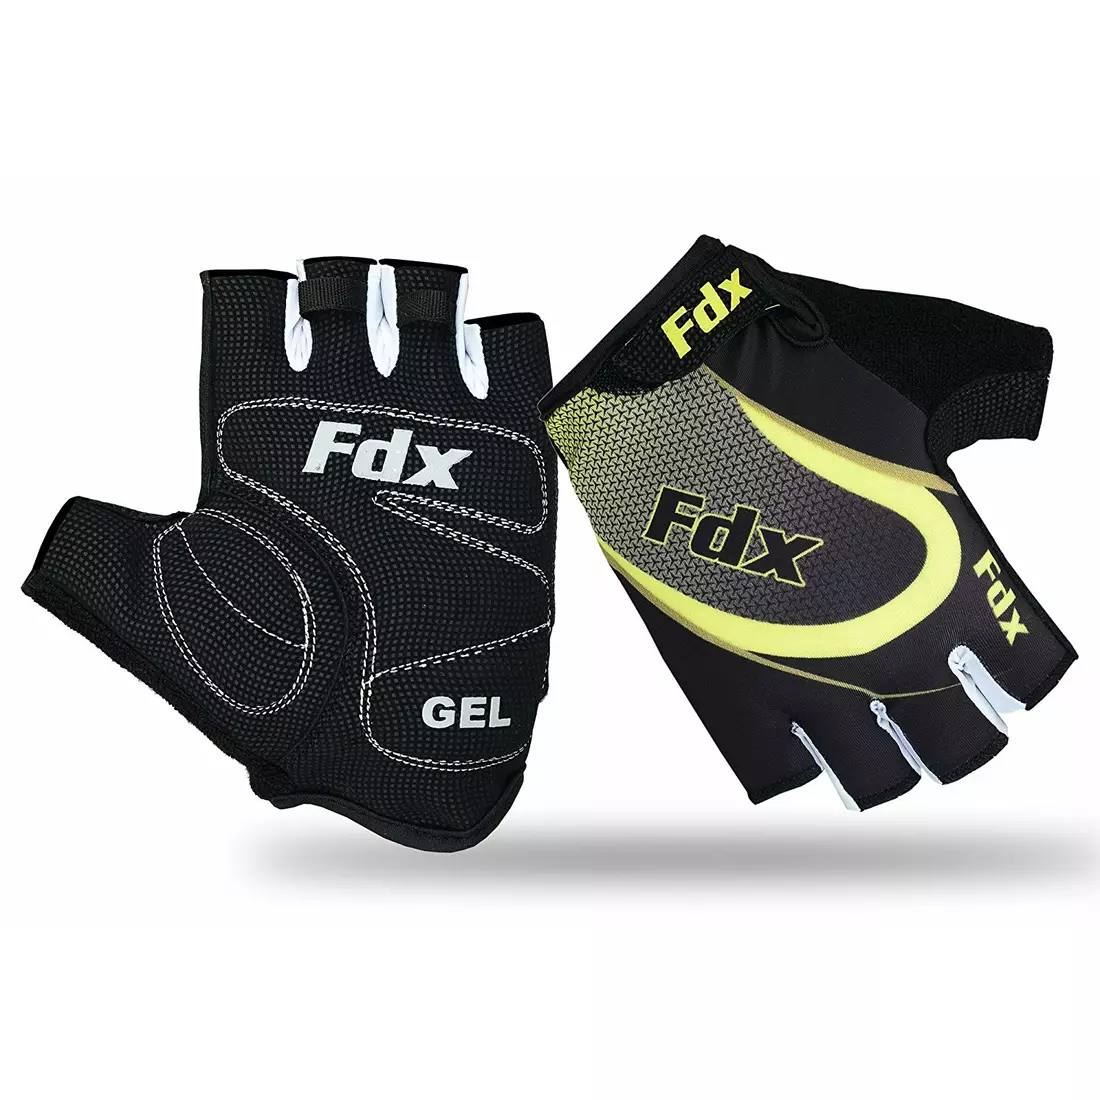 Mănuși de ciclism pentru bărbați FDX 1010 negre și galbene